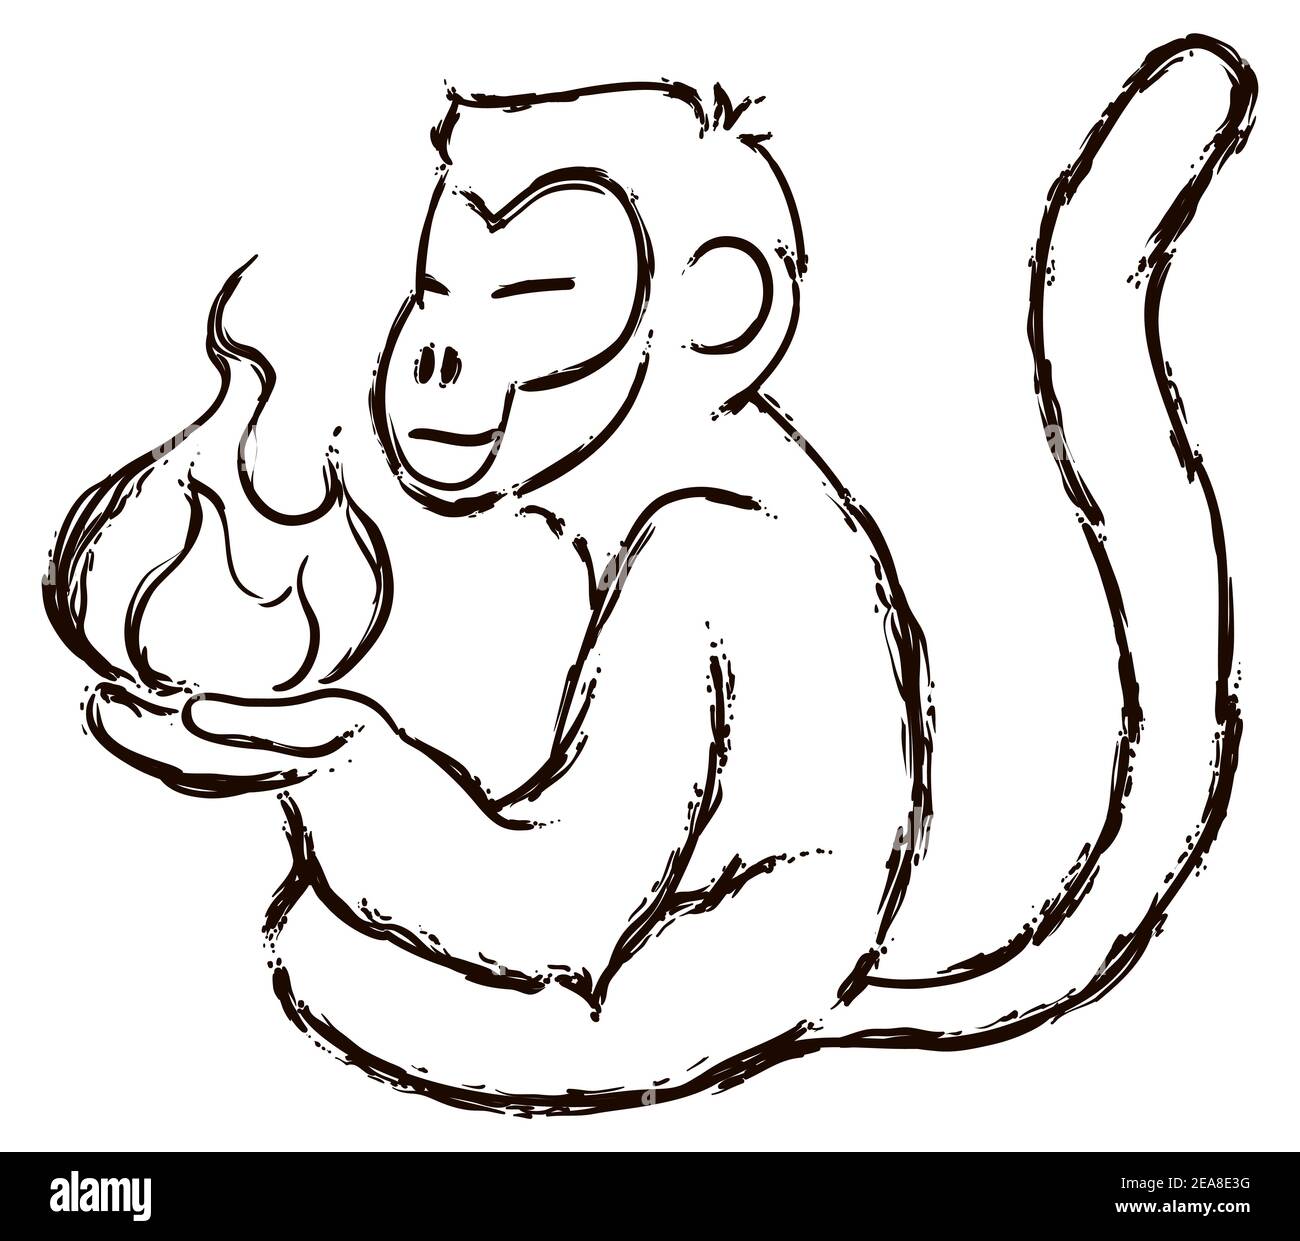 Monkey design in stile spazzhstroke che tiene l'elemento fuoco, secondo Zodiac cinese. Illustrazione Vettoriale